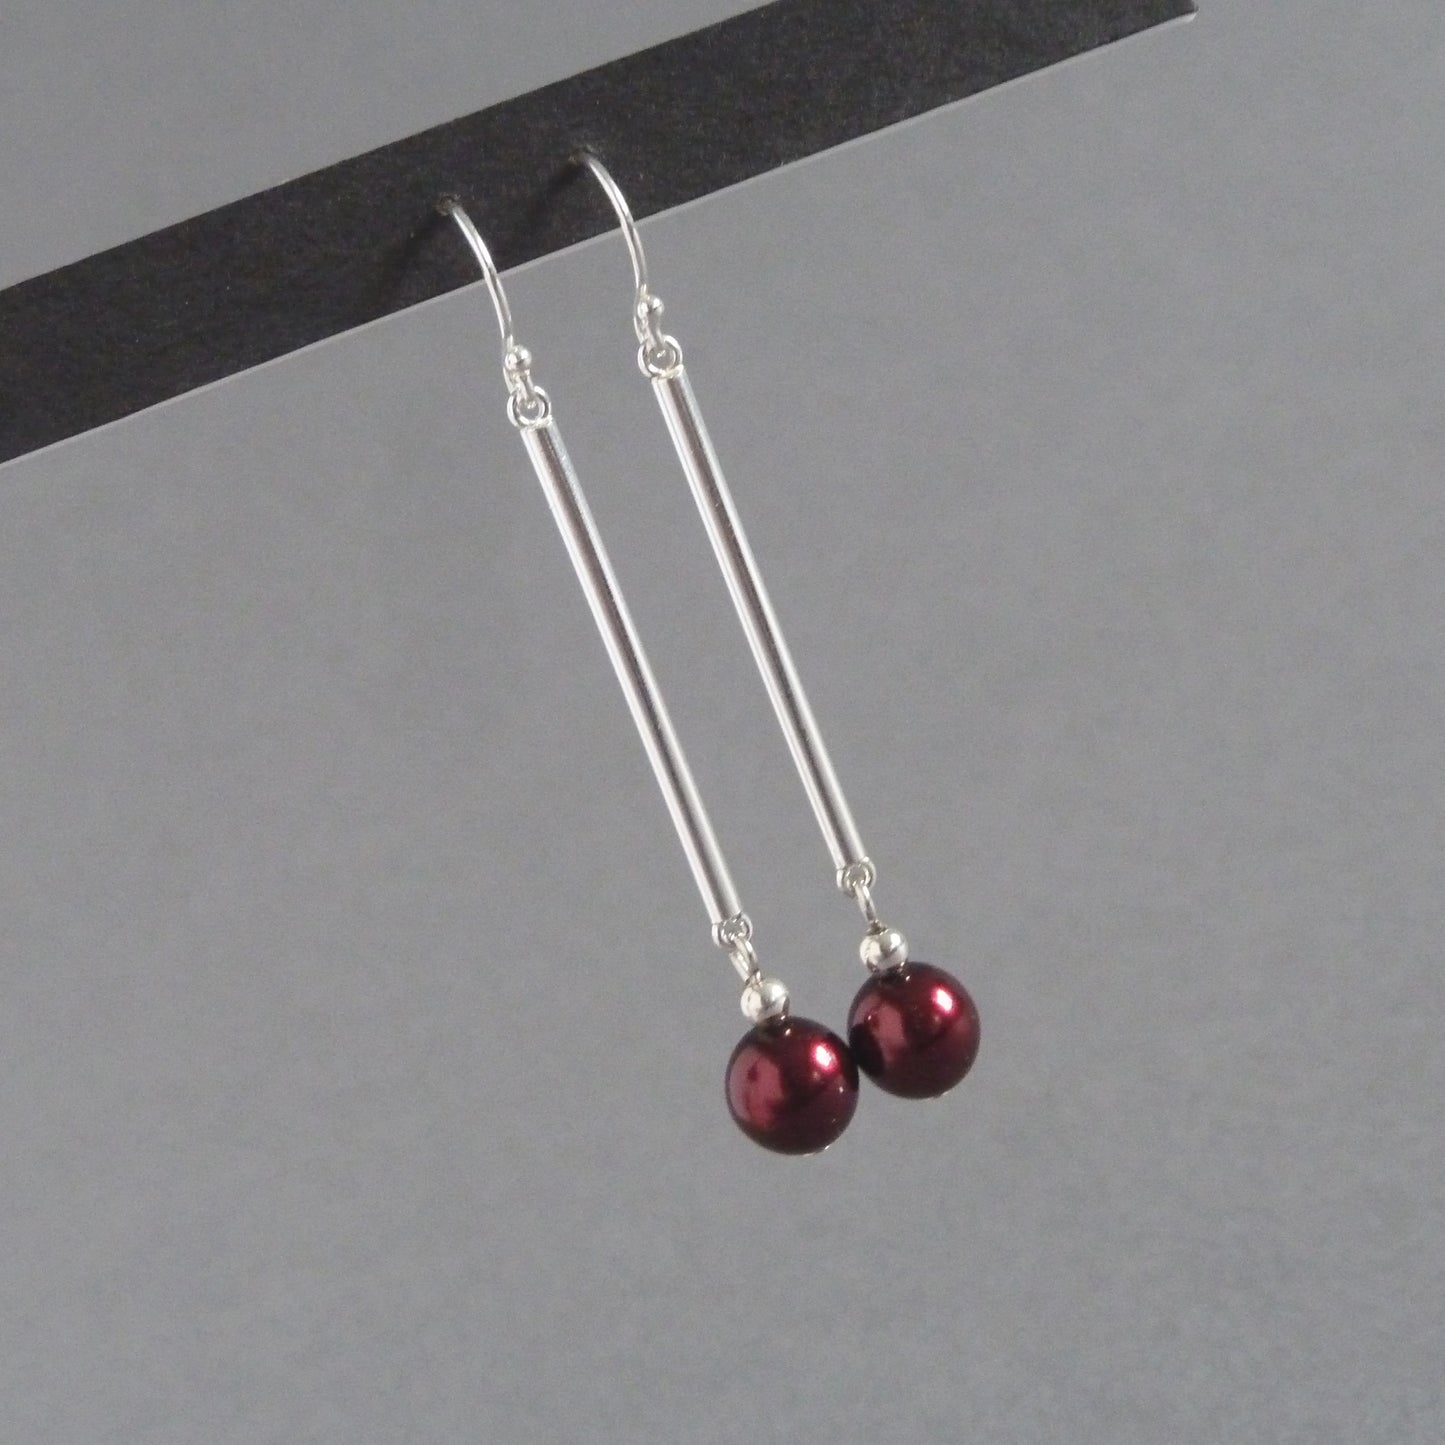 Burgundy pearl drop earrings